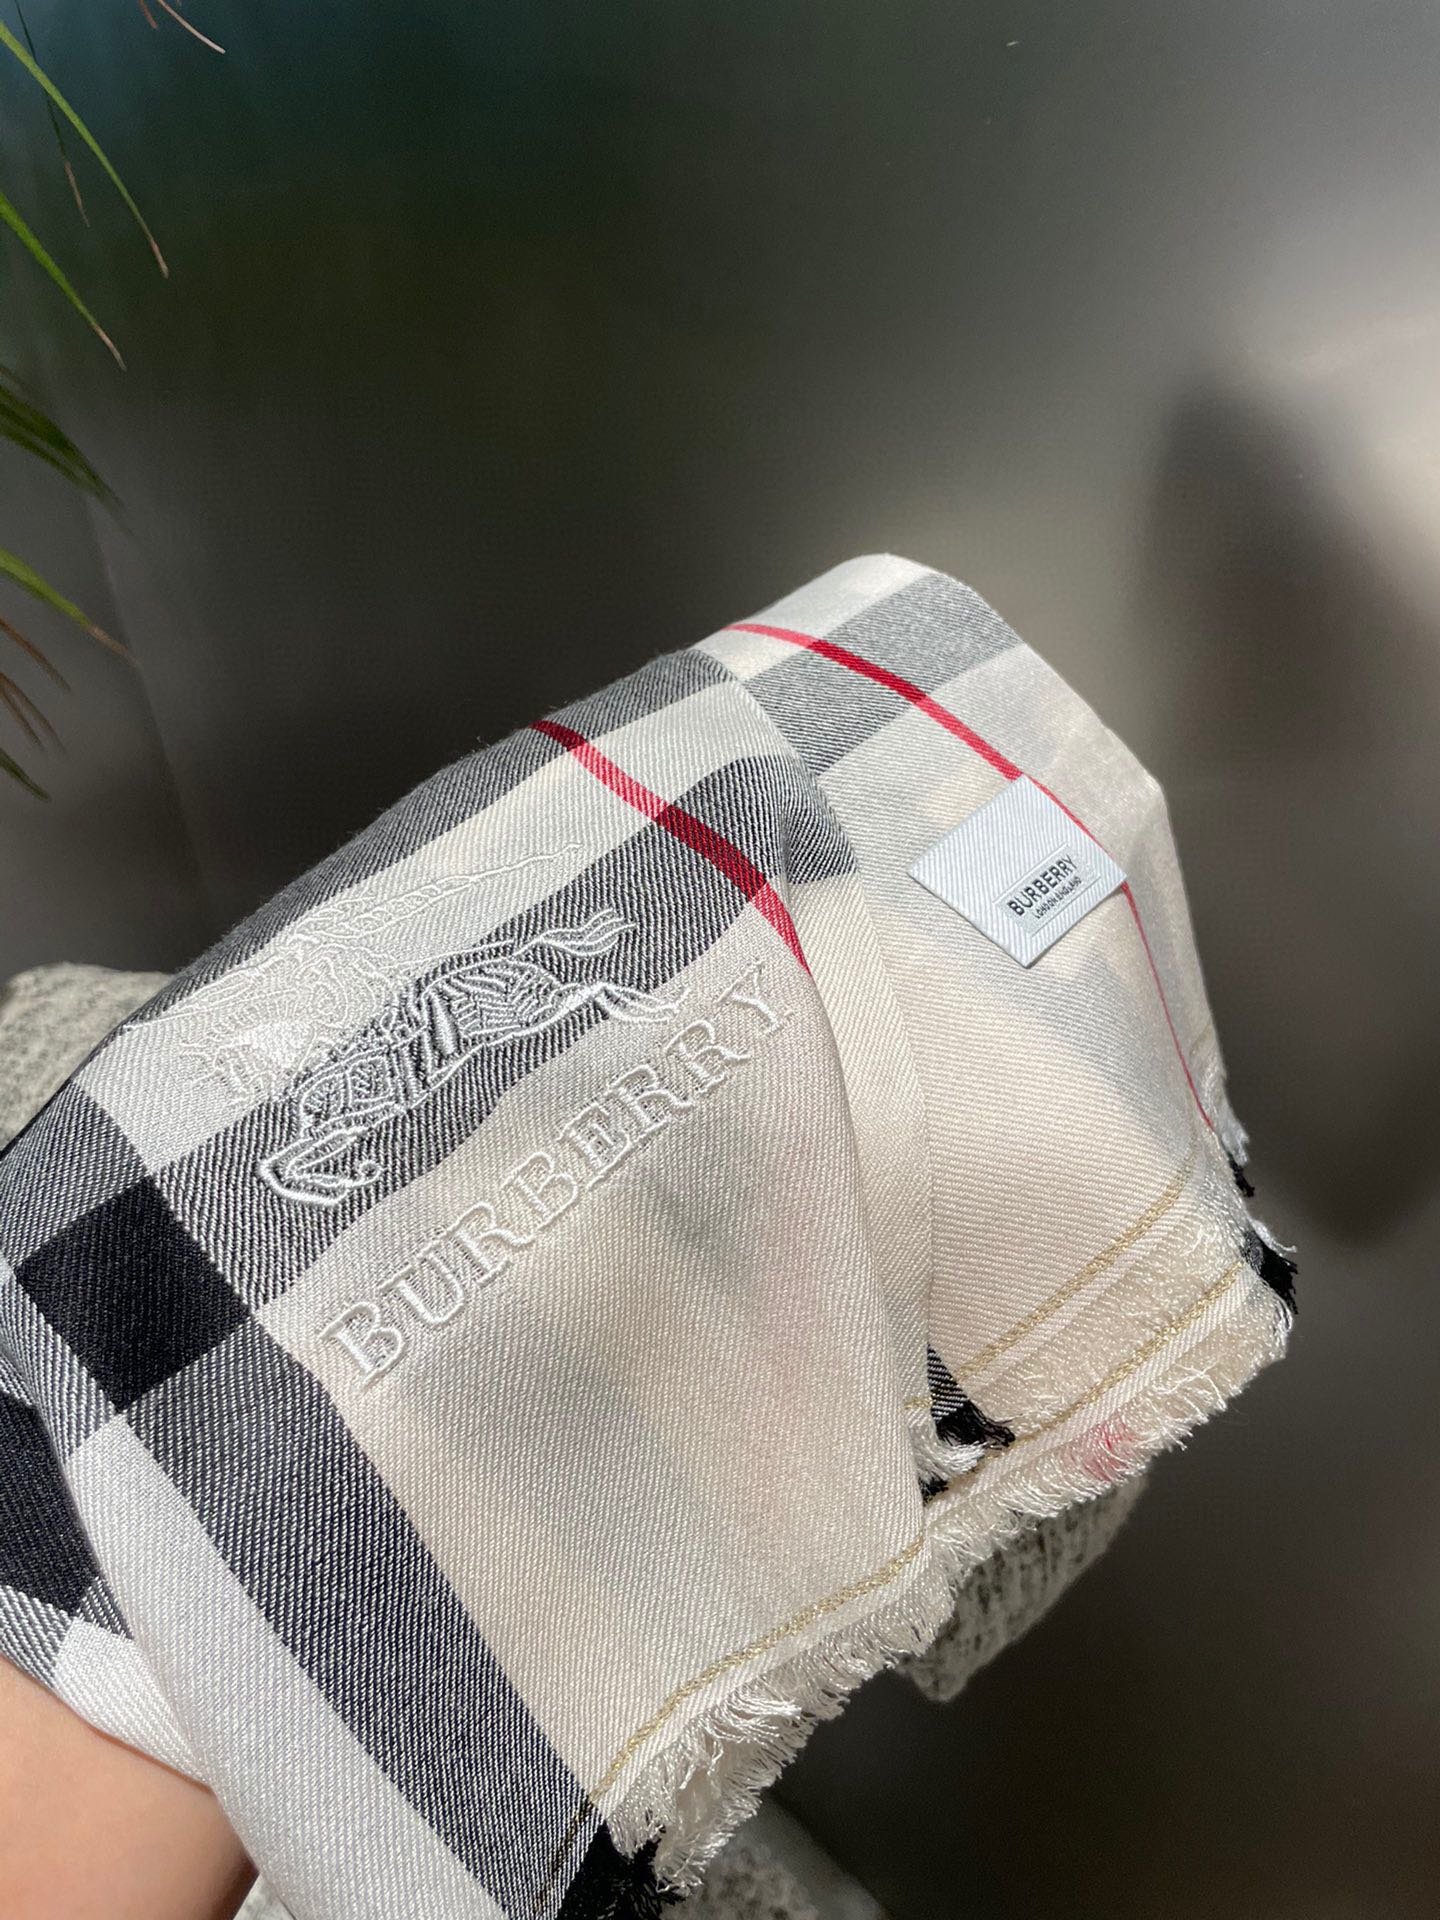 ️巴宝莉正装系列货专供旗舰店的vi顶级苏格兰进口山羊绒无比的高贵优雅知性的款式简洁大气的设计绝对的不是花